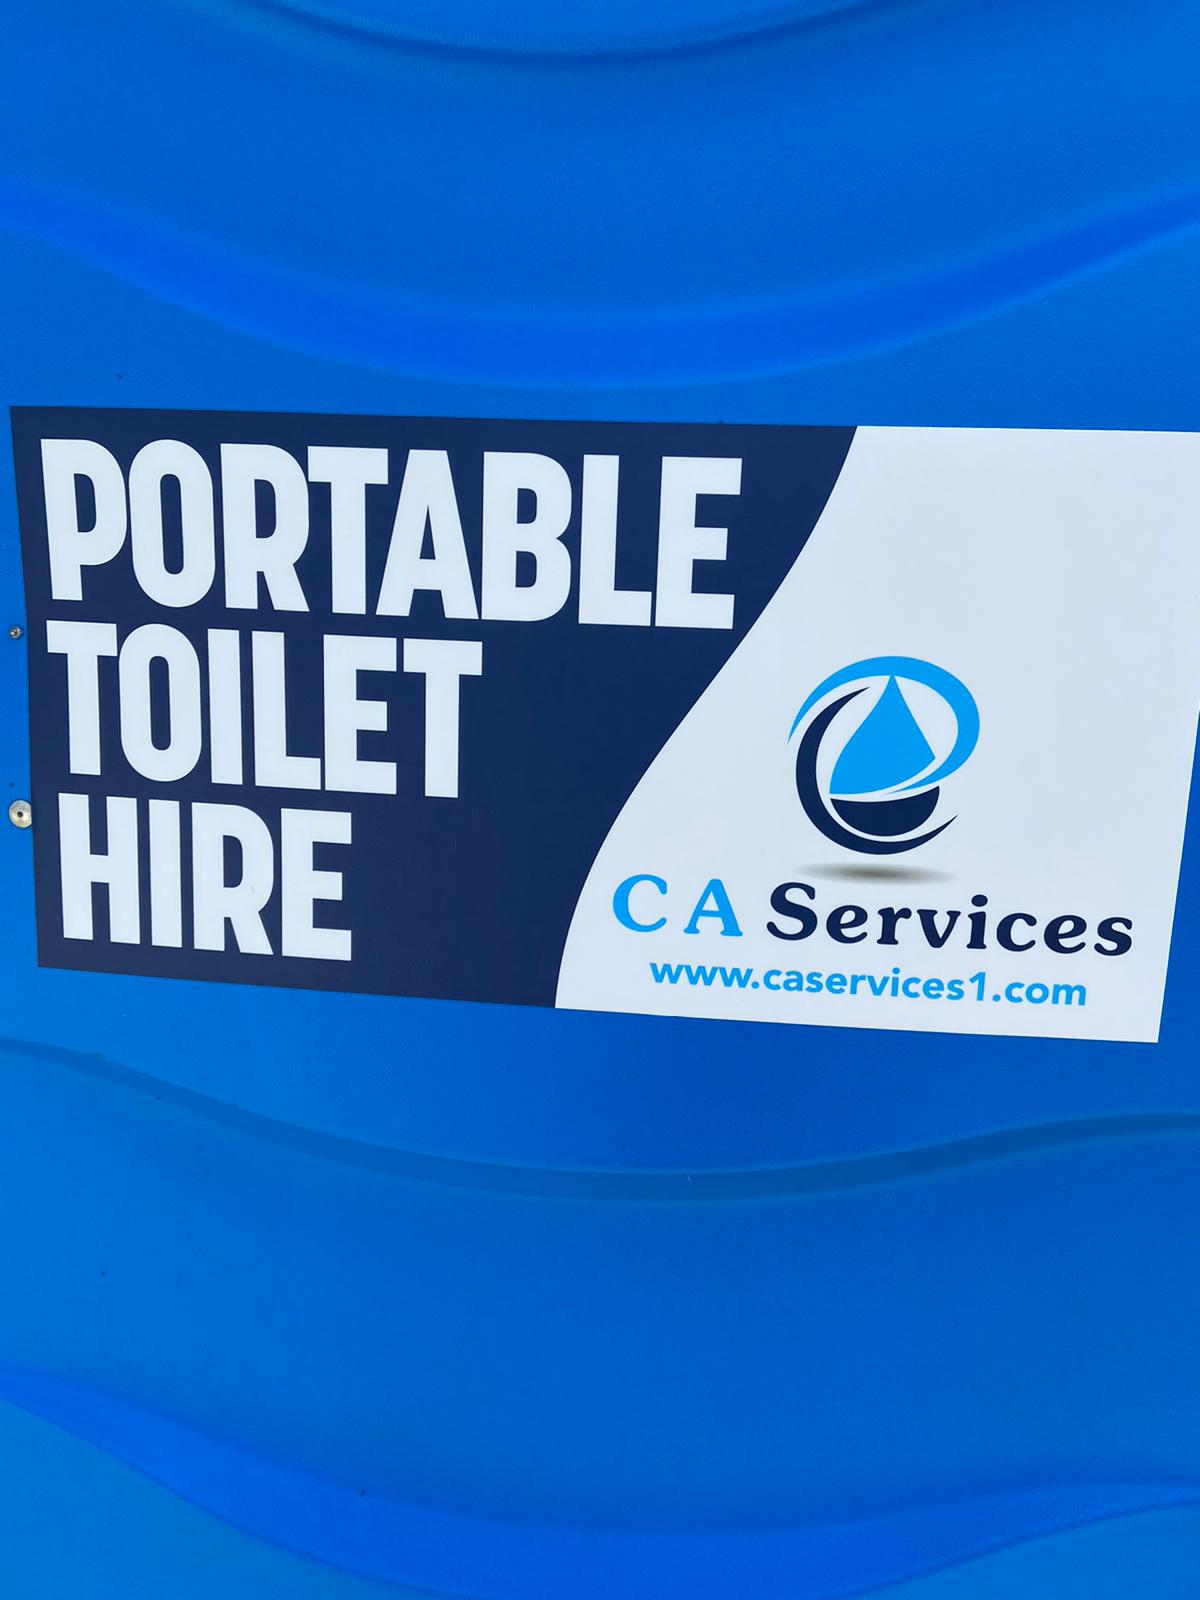 C A Services Portable Toilet Hire